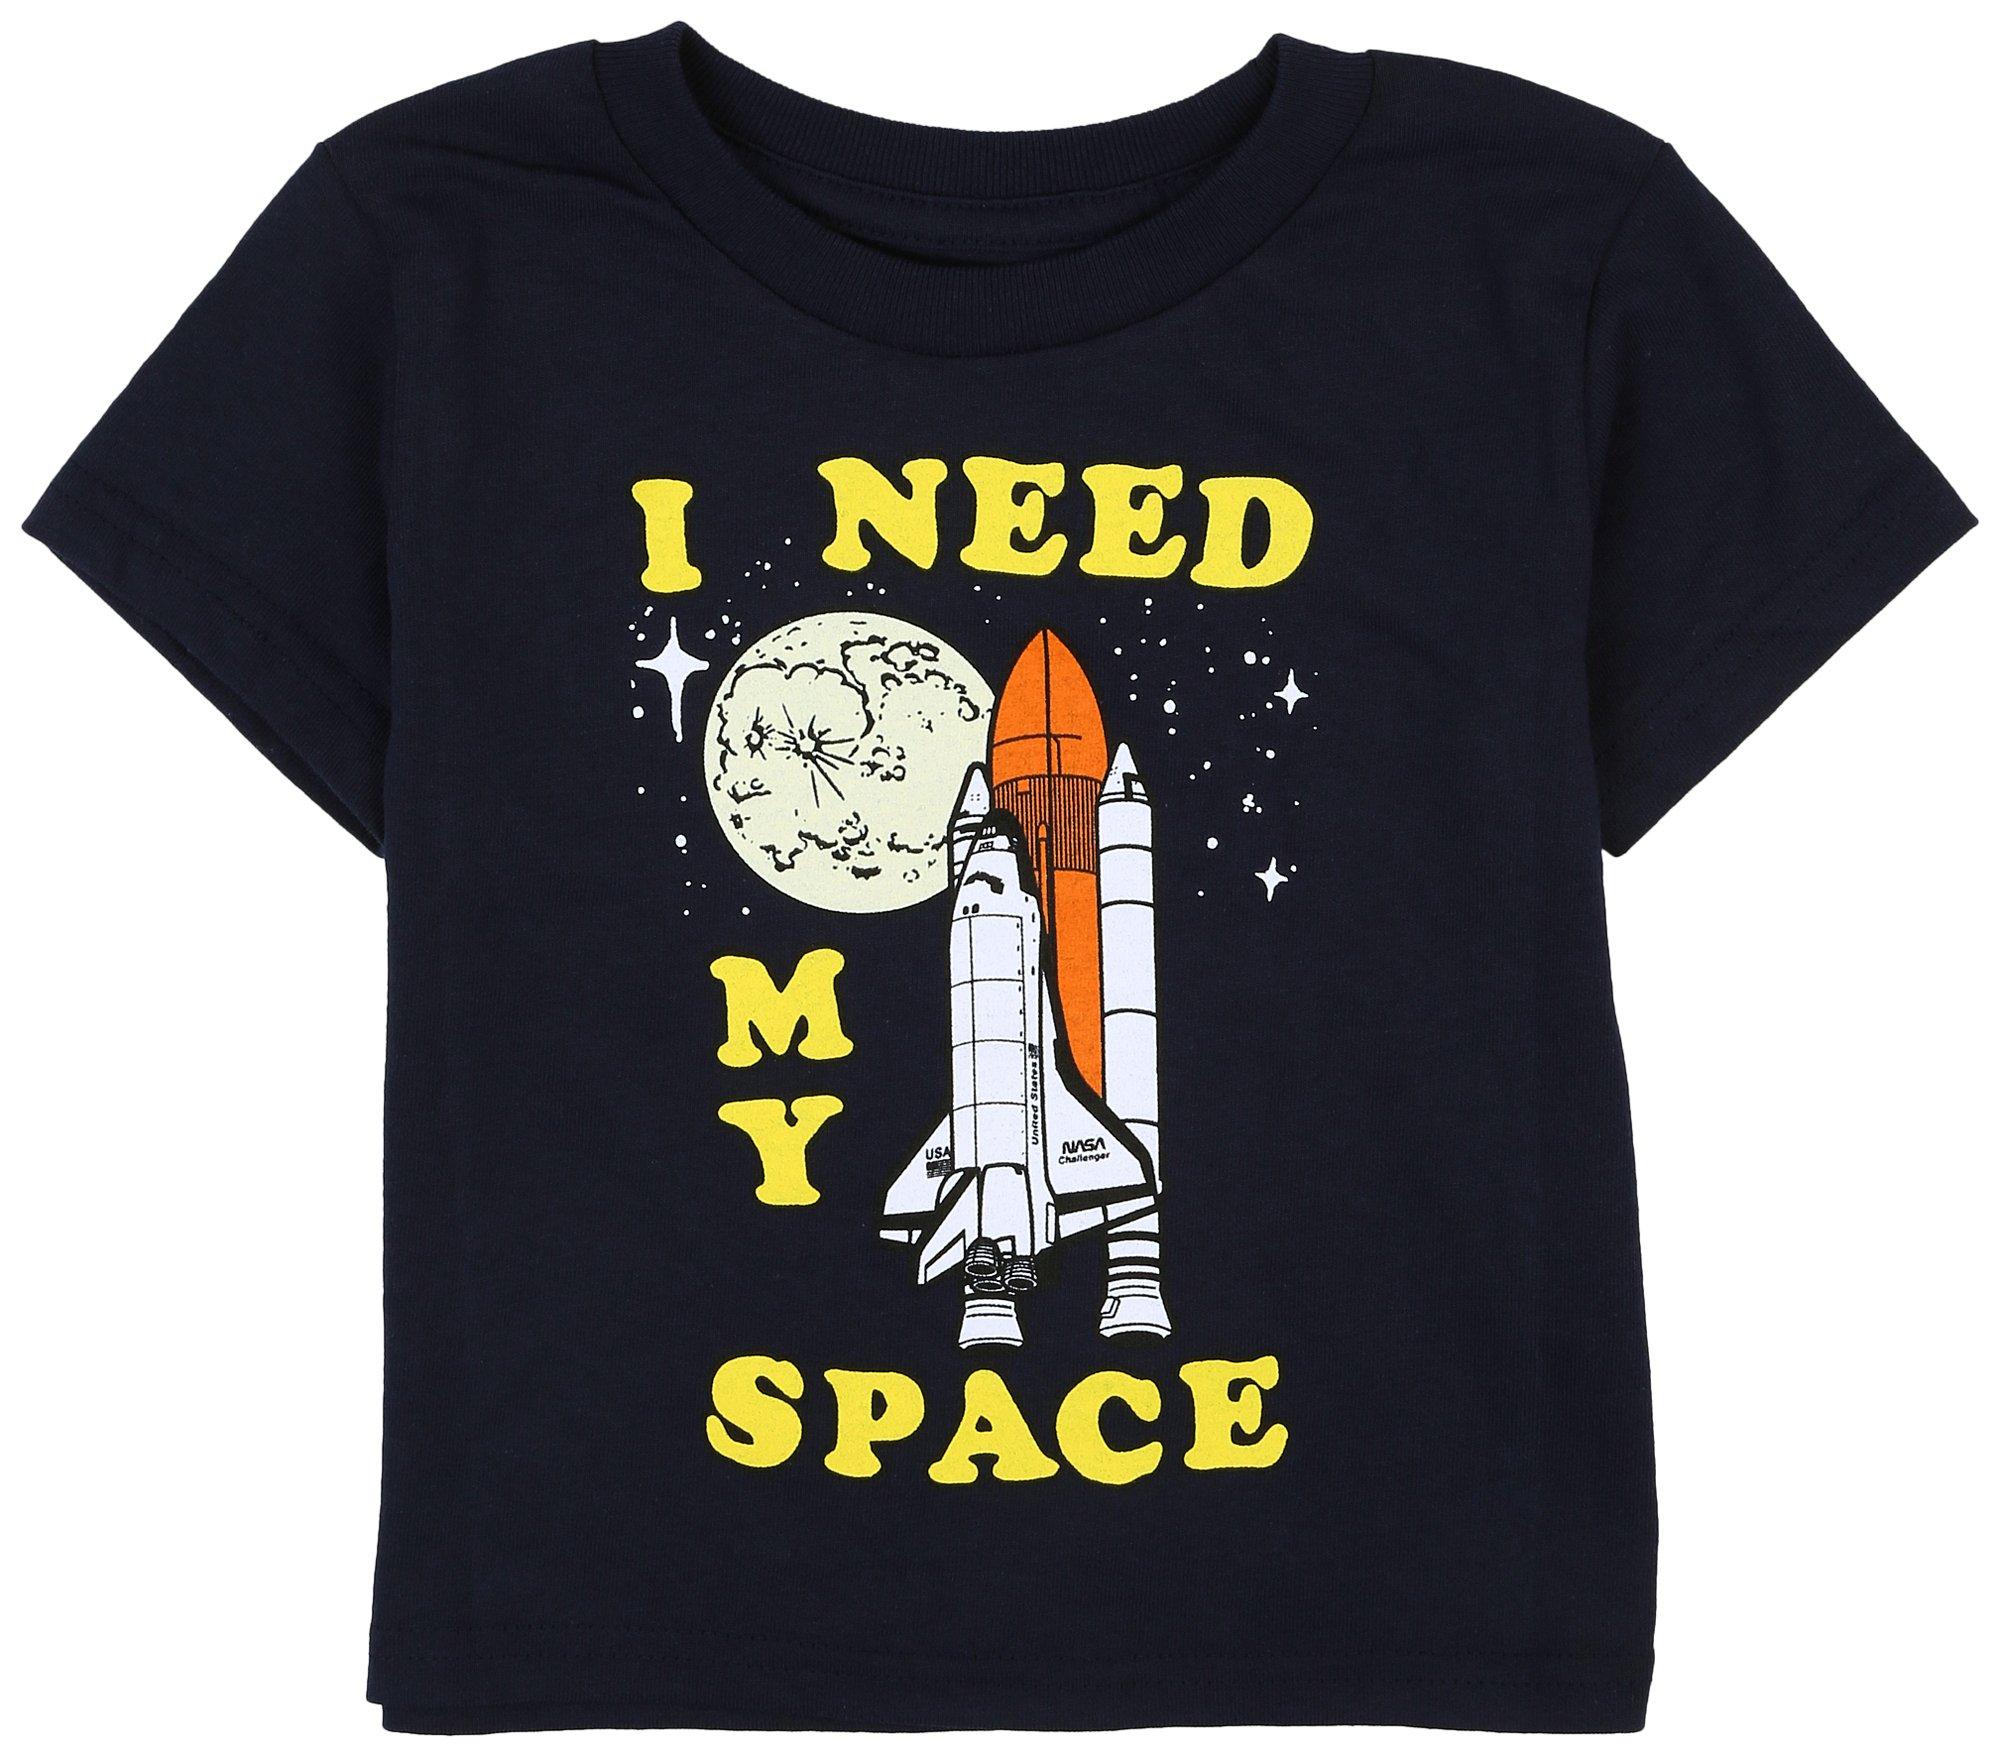 Ripple Junction Toddler Boys Space Shuttle T-Shirt